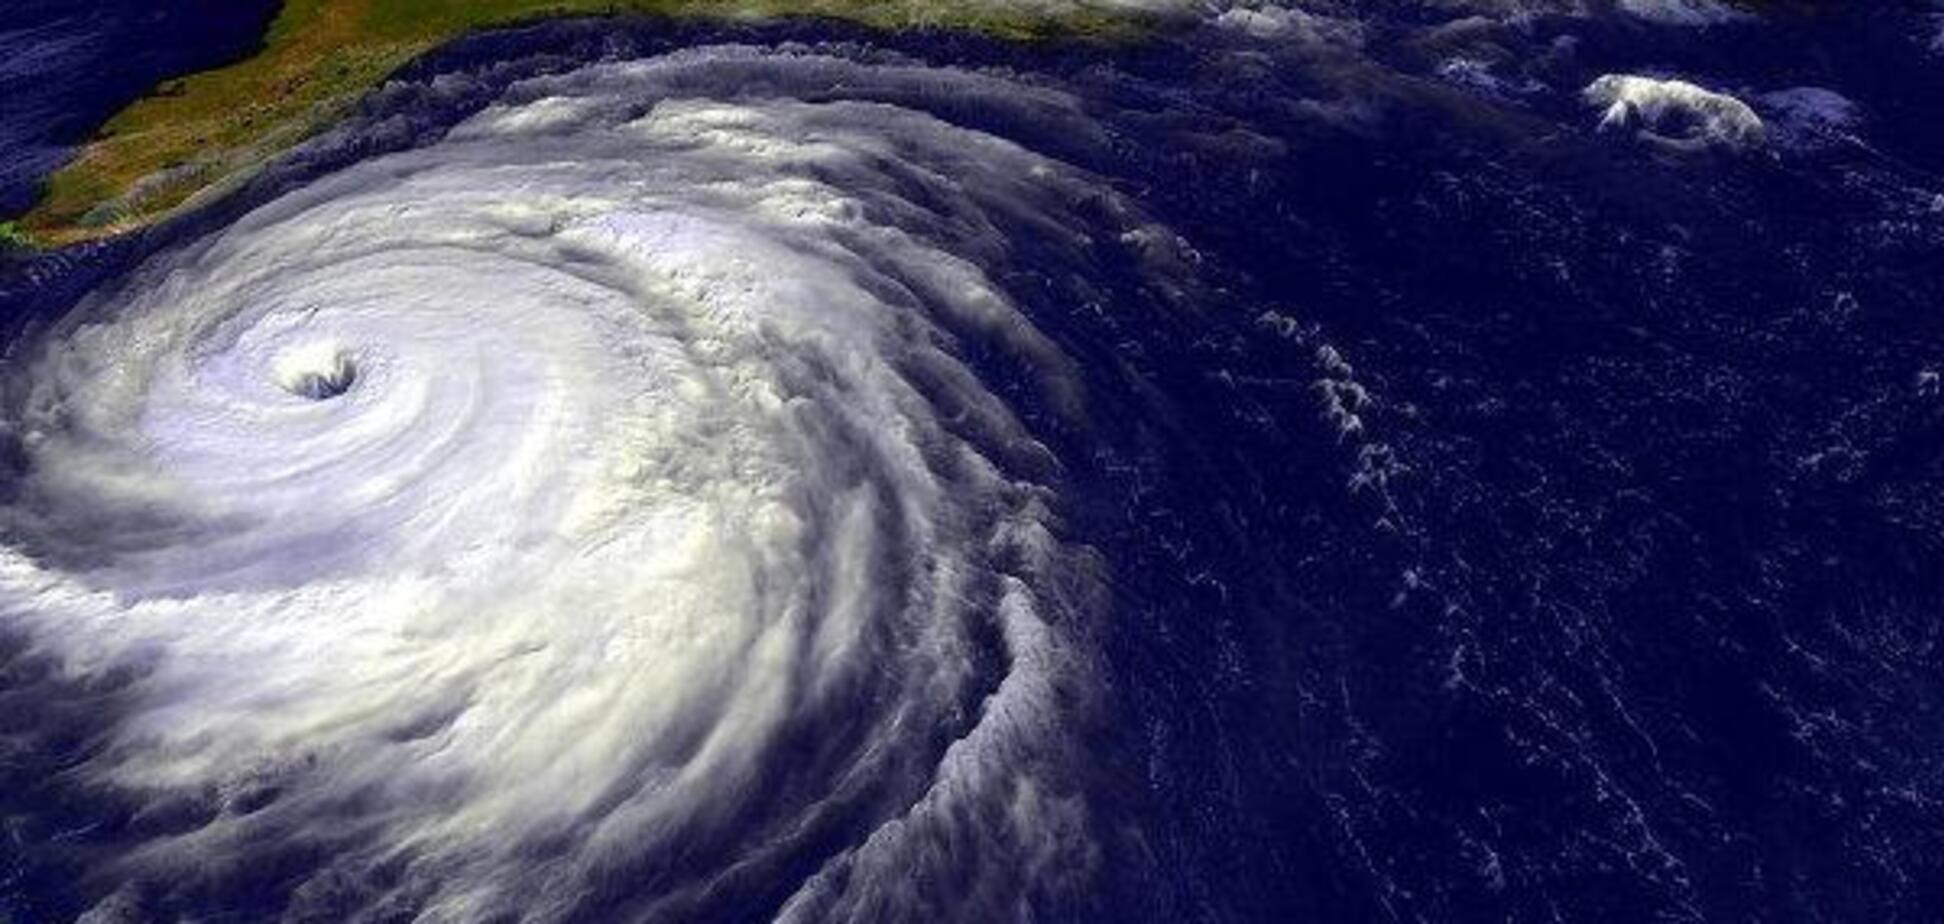  В космосе нашли гигантский ураган